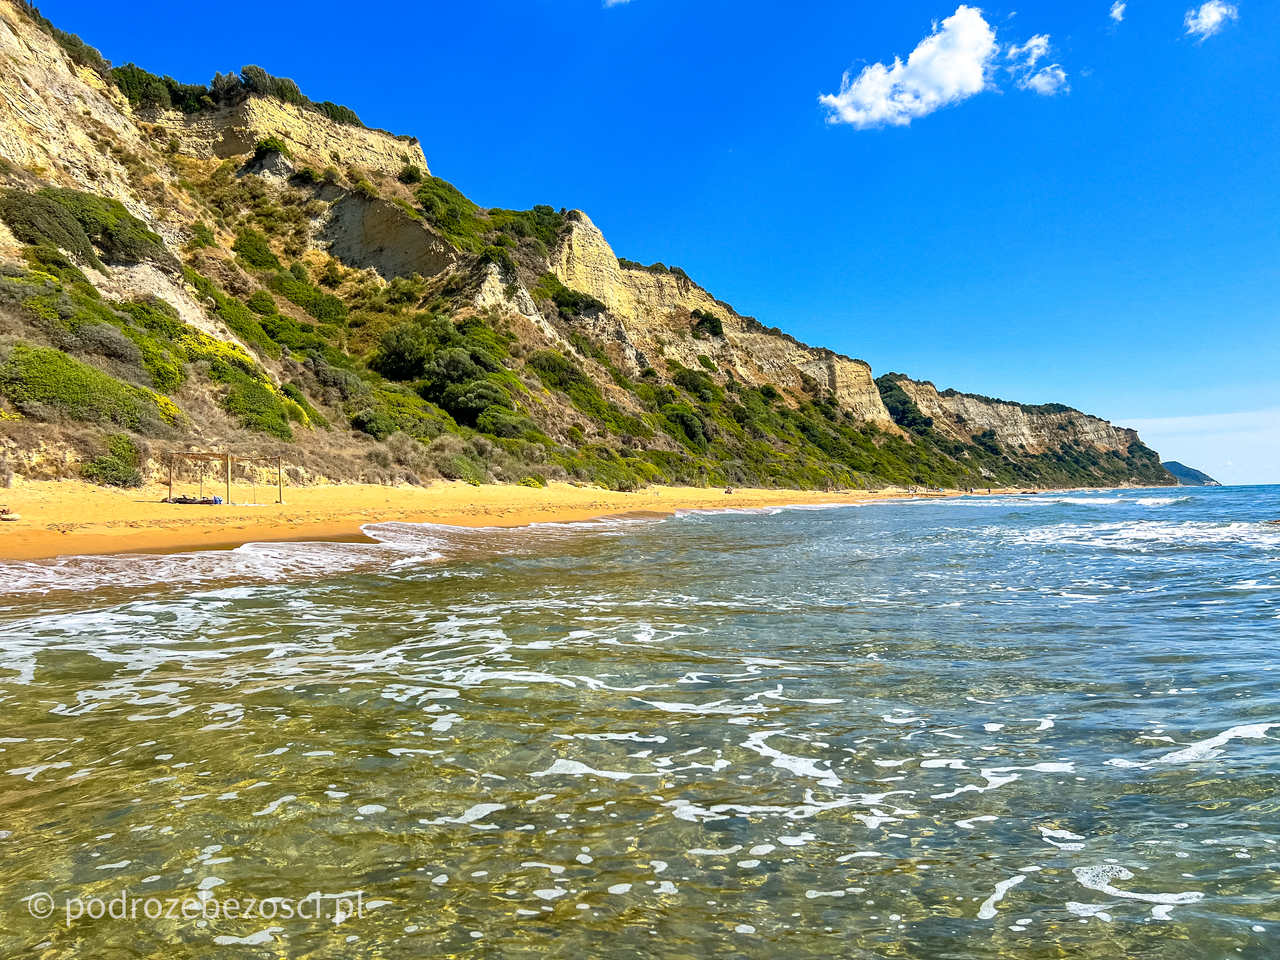 gardenos beach najpiekniejsze-plaze-na-korfu-grecja-plaza-piaszczysta-gdzie-warto-plazowac-jak-wygladaja-plaze-na-korfu-mapa-top-10-beaches-corfu-greece